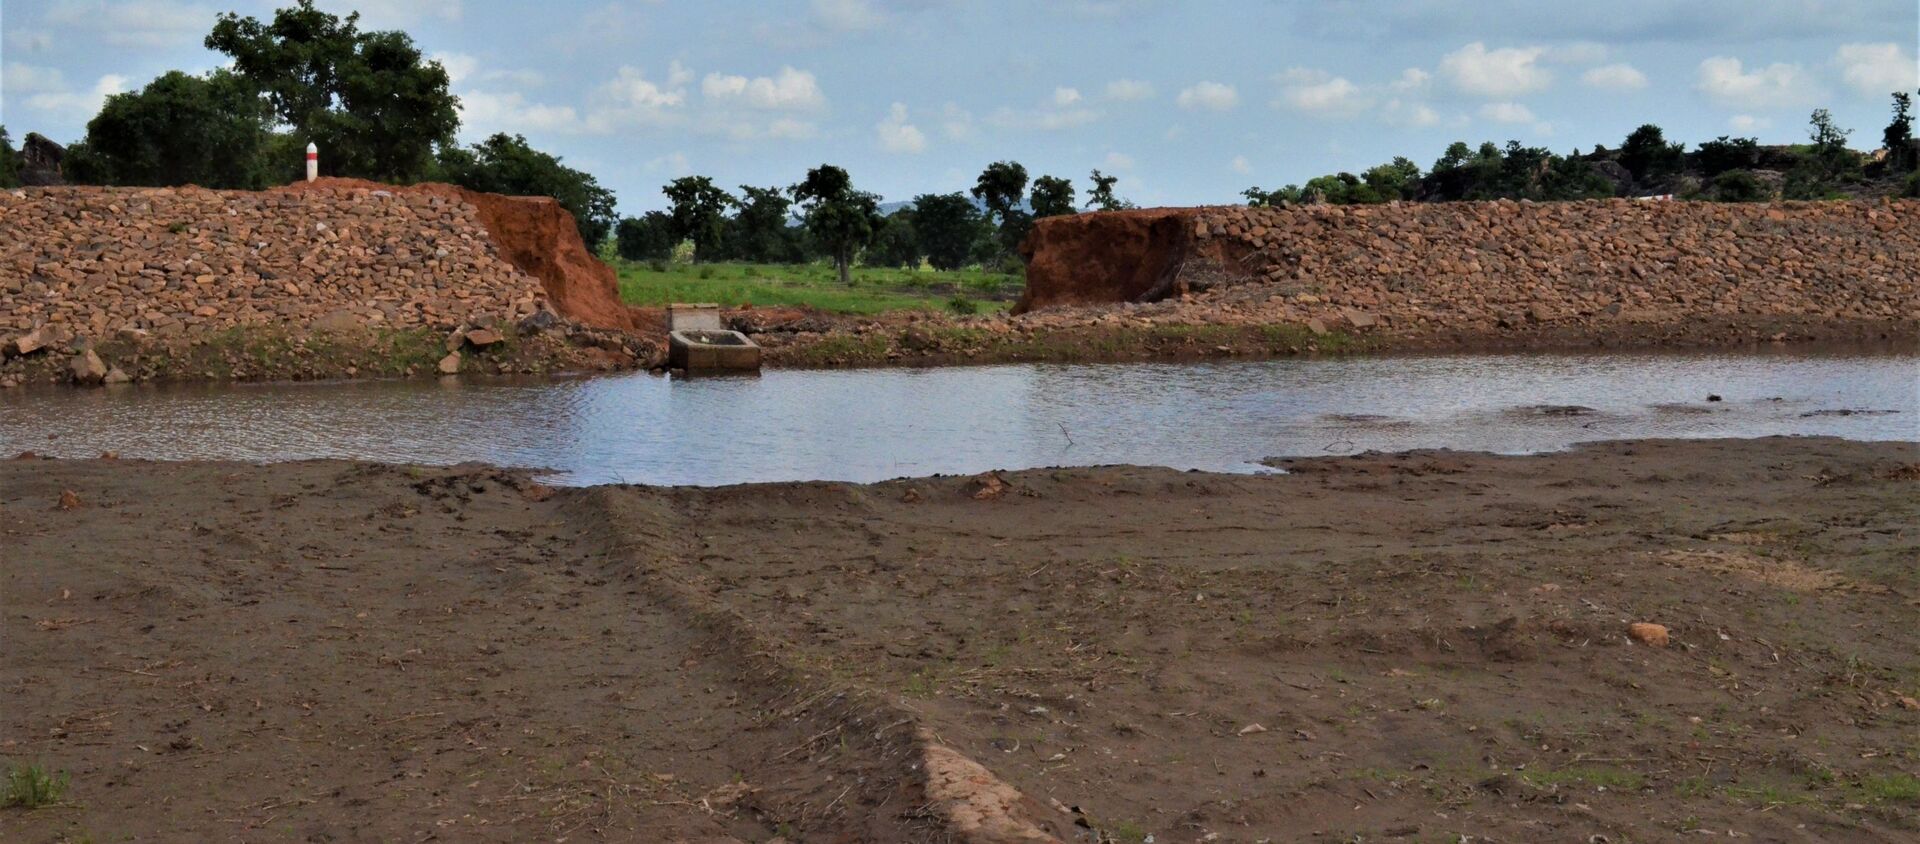 Un barrage destiné à alimenter en eau deux villages, Sidiki et Konkoagou, dans le nord du Togo, mais deux pluies torrentielles en sont venues à bout - Sputnik Afrique, 1920, 05.08.2021